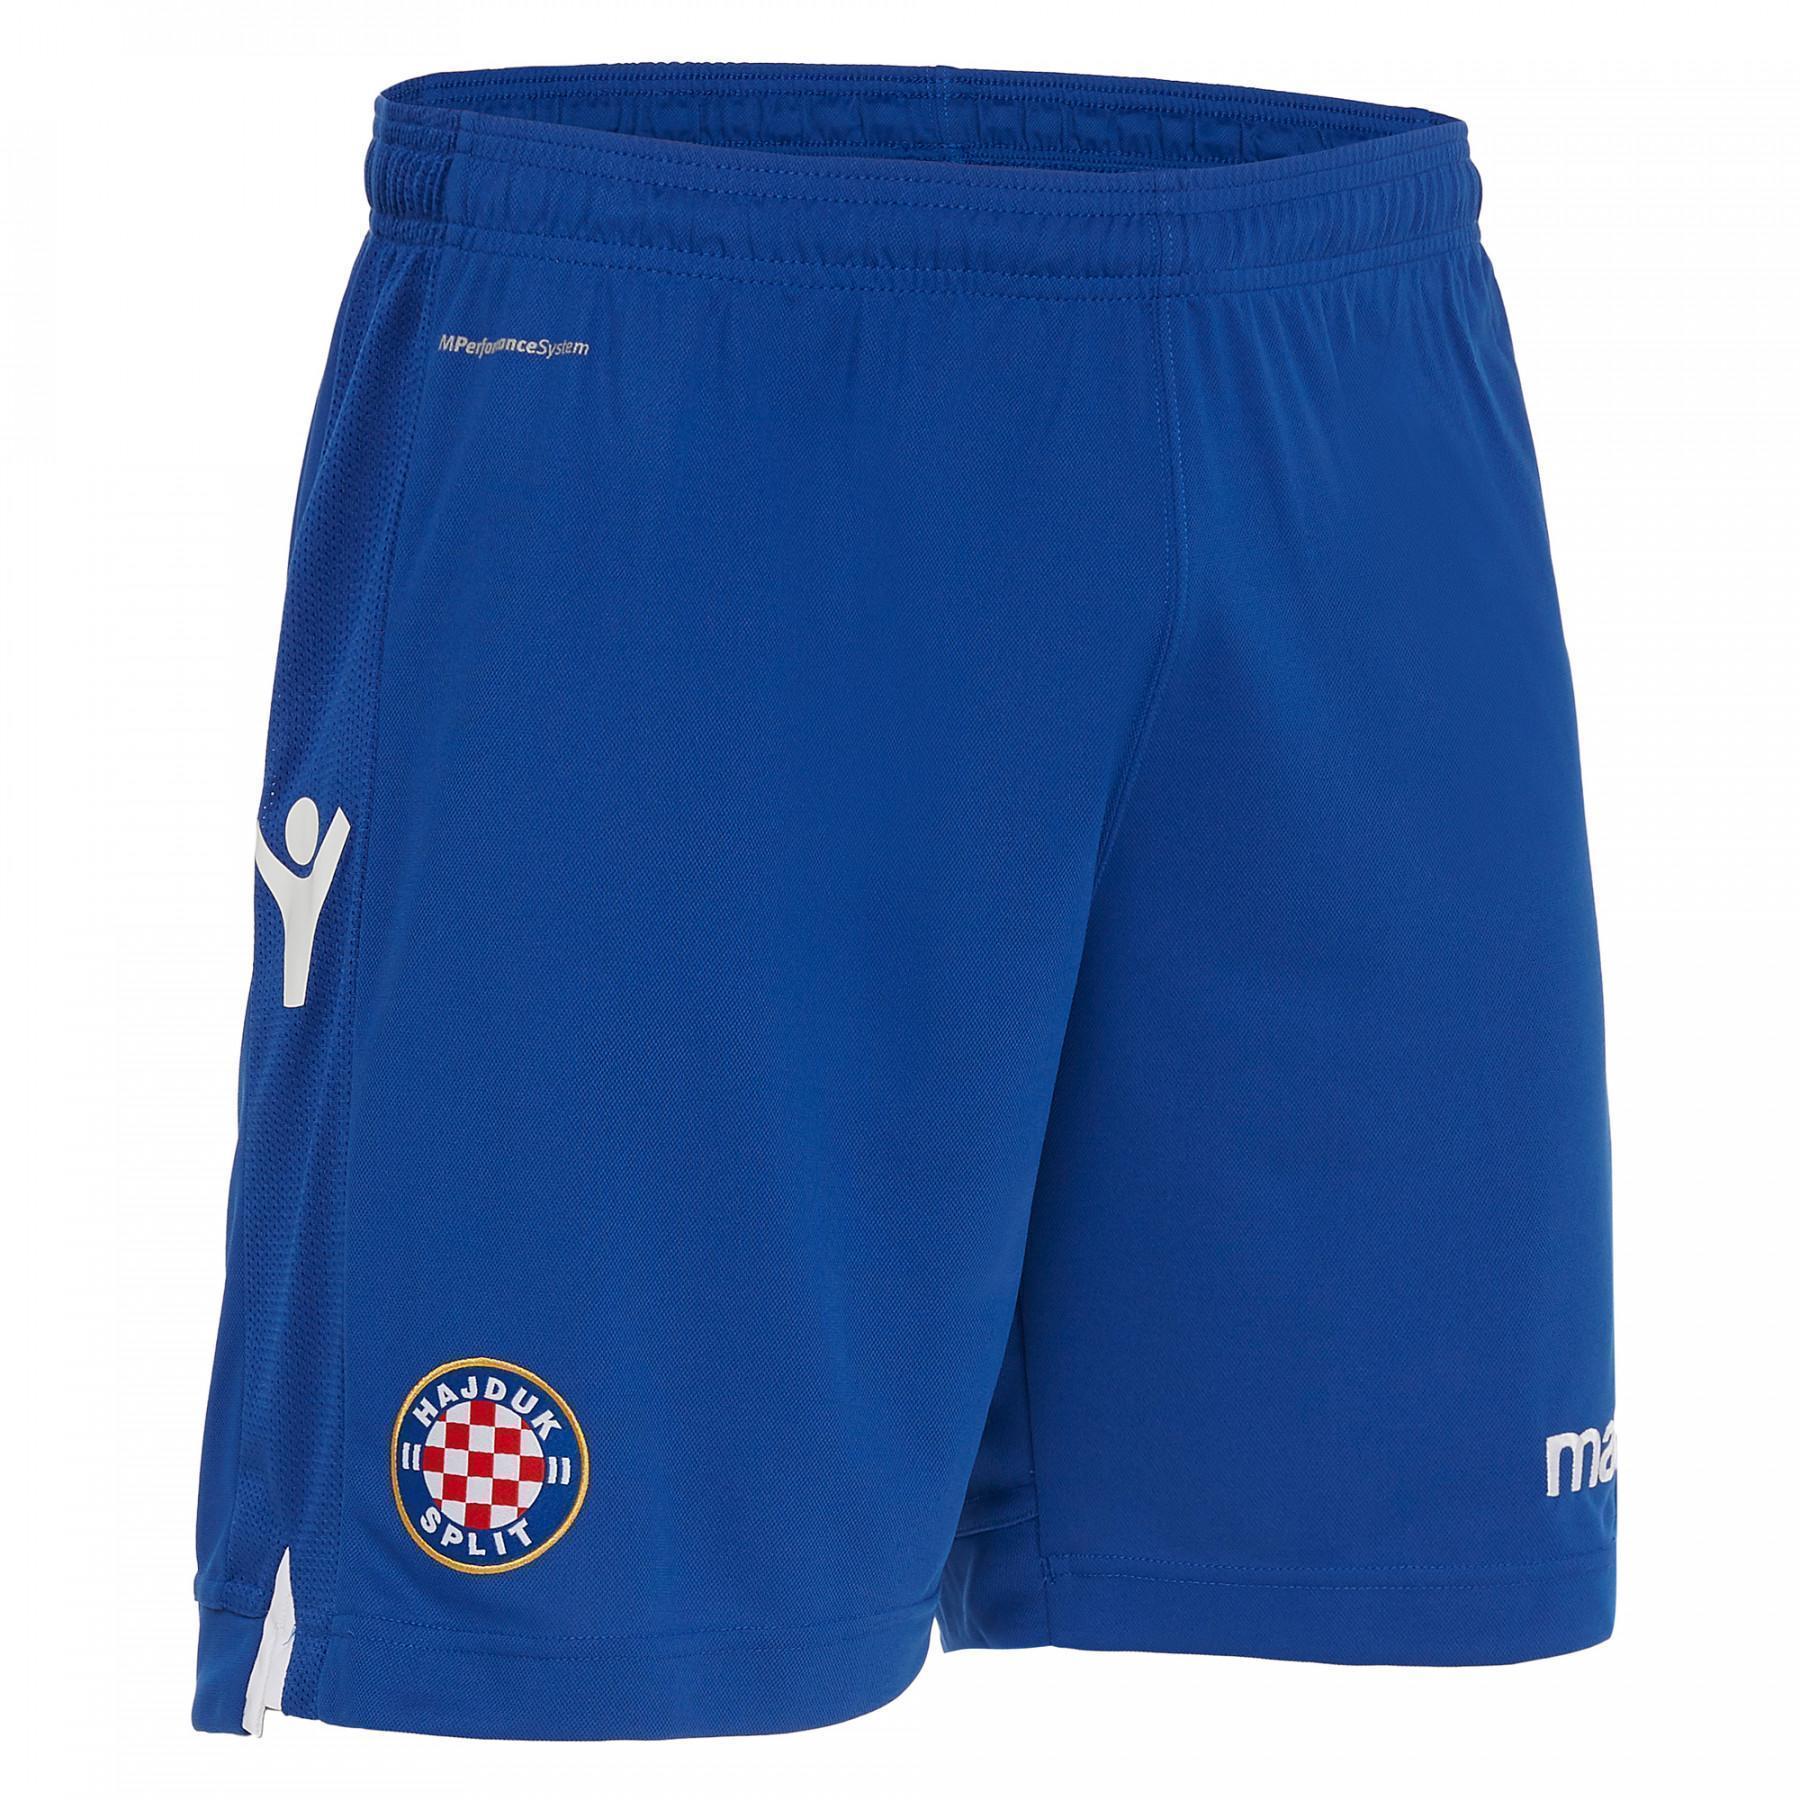 Home short hnk Hajduk Split 19/20